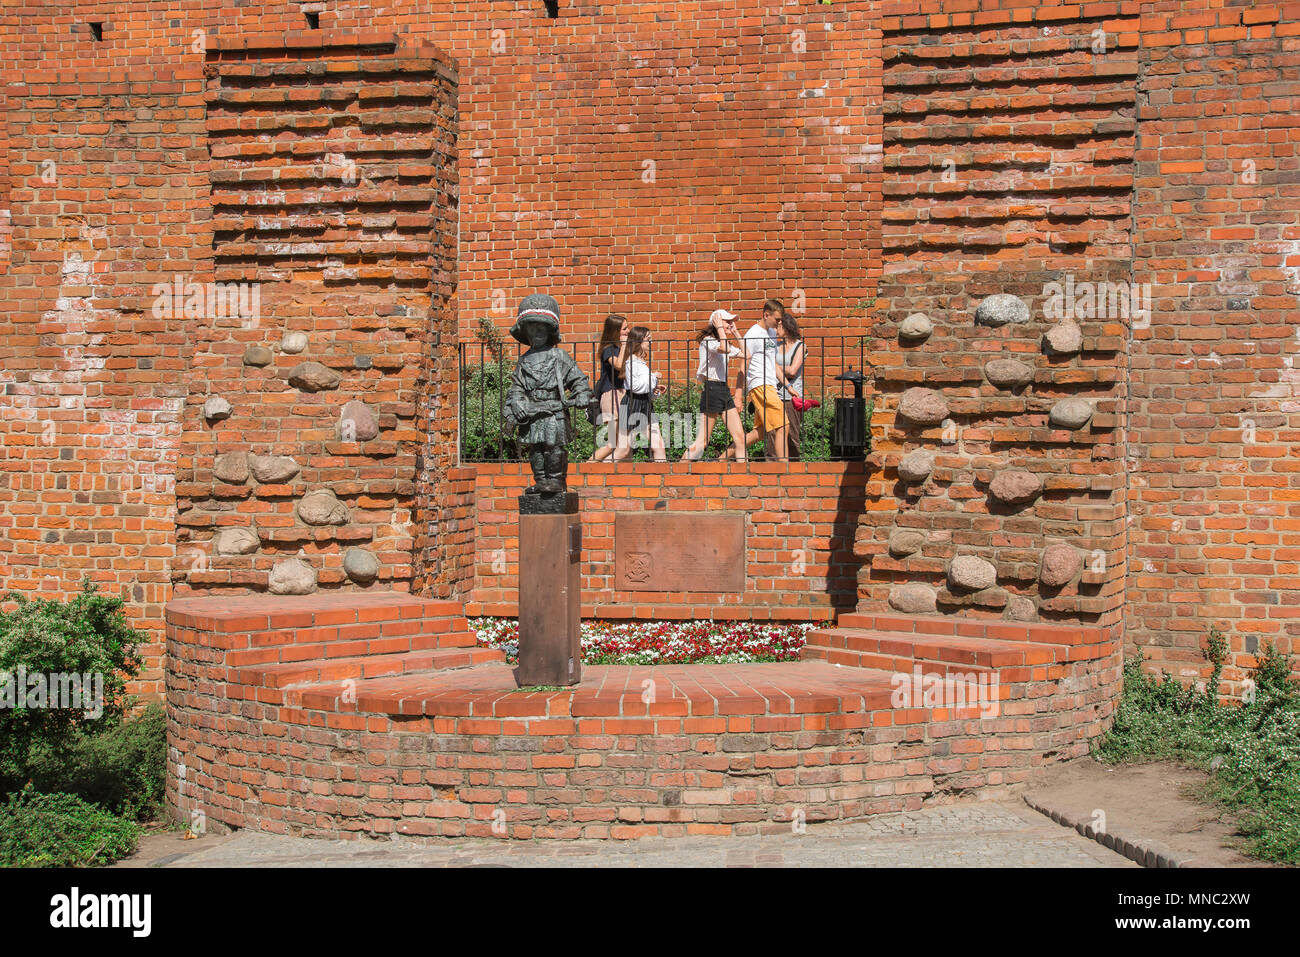 Peu de Varsovie insurgé, Polish adolescents passent devant le monument commémorant l'insurgé peu joué par les enfants dans l'Insurrection de Varsovie de 1944. Banque D'Images